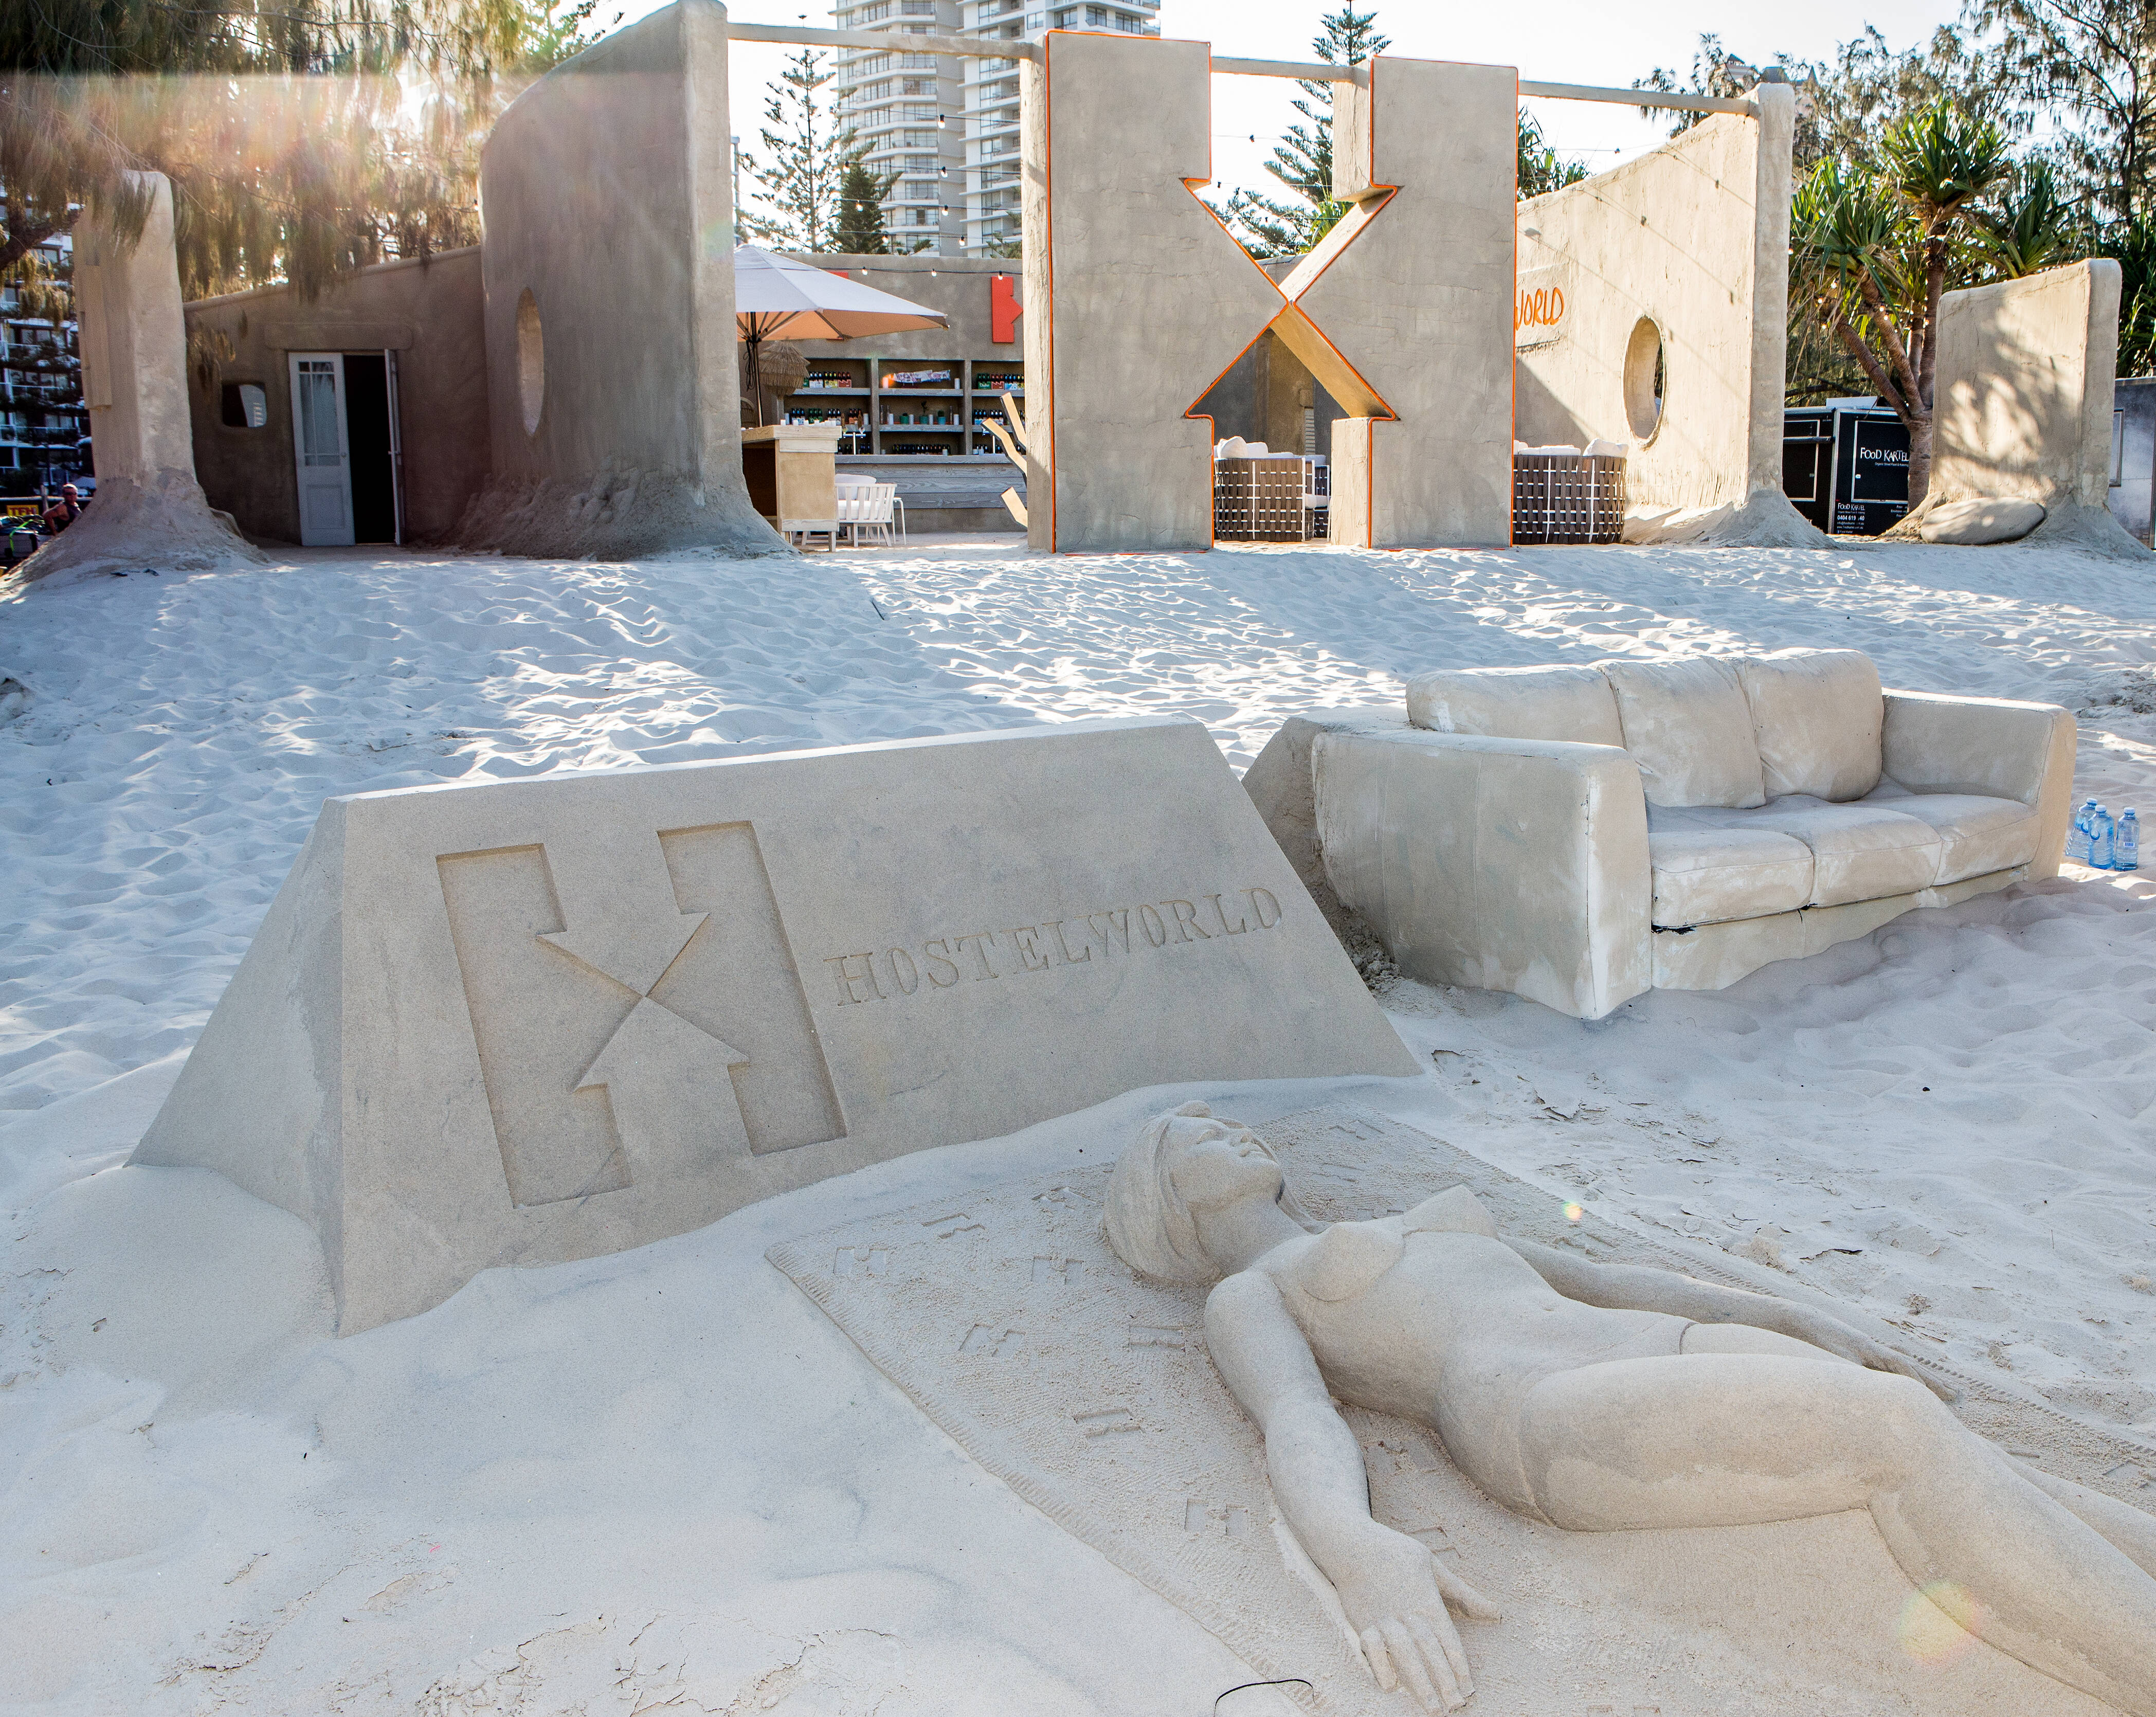 O hostel foi inspirado em um gigante castelo feito de areia. Foto: Divulgação/Hostelworld